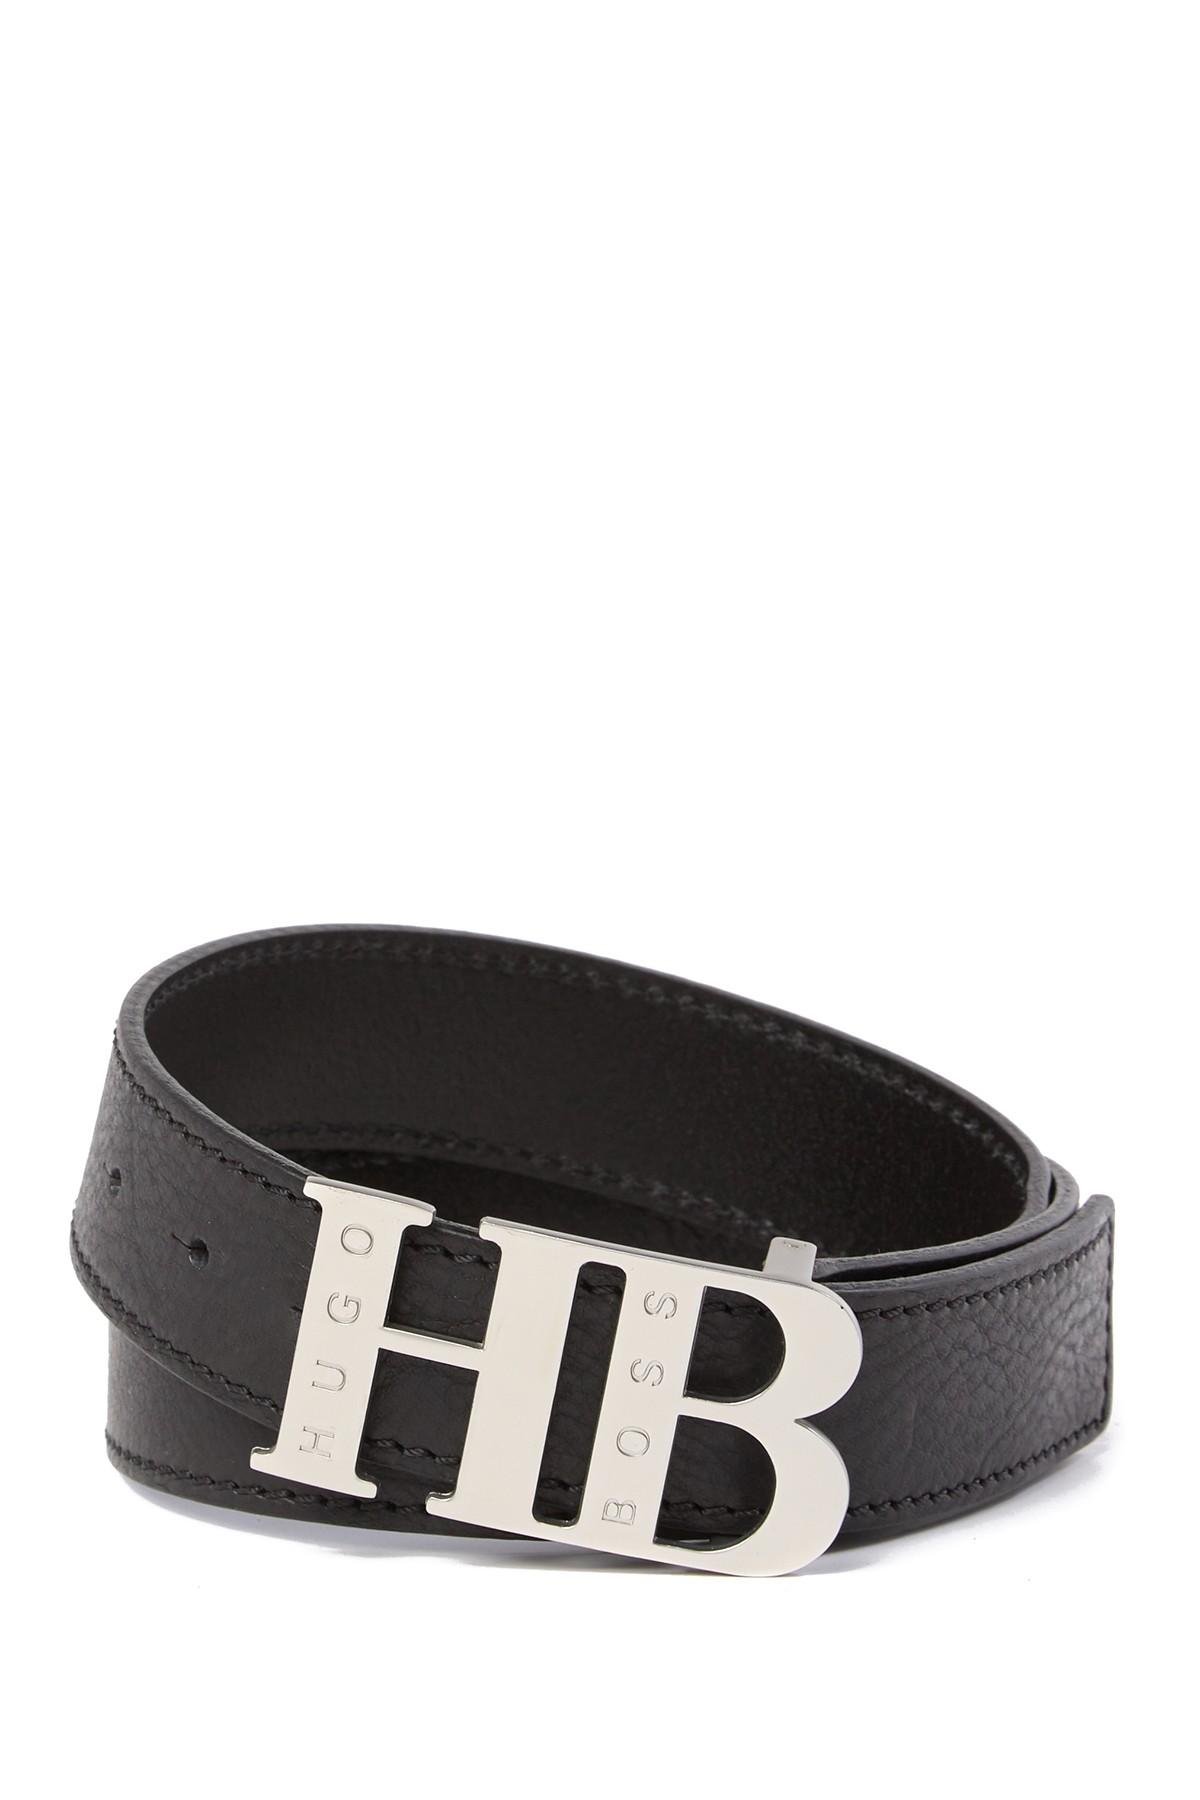 hugo boss belt hb